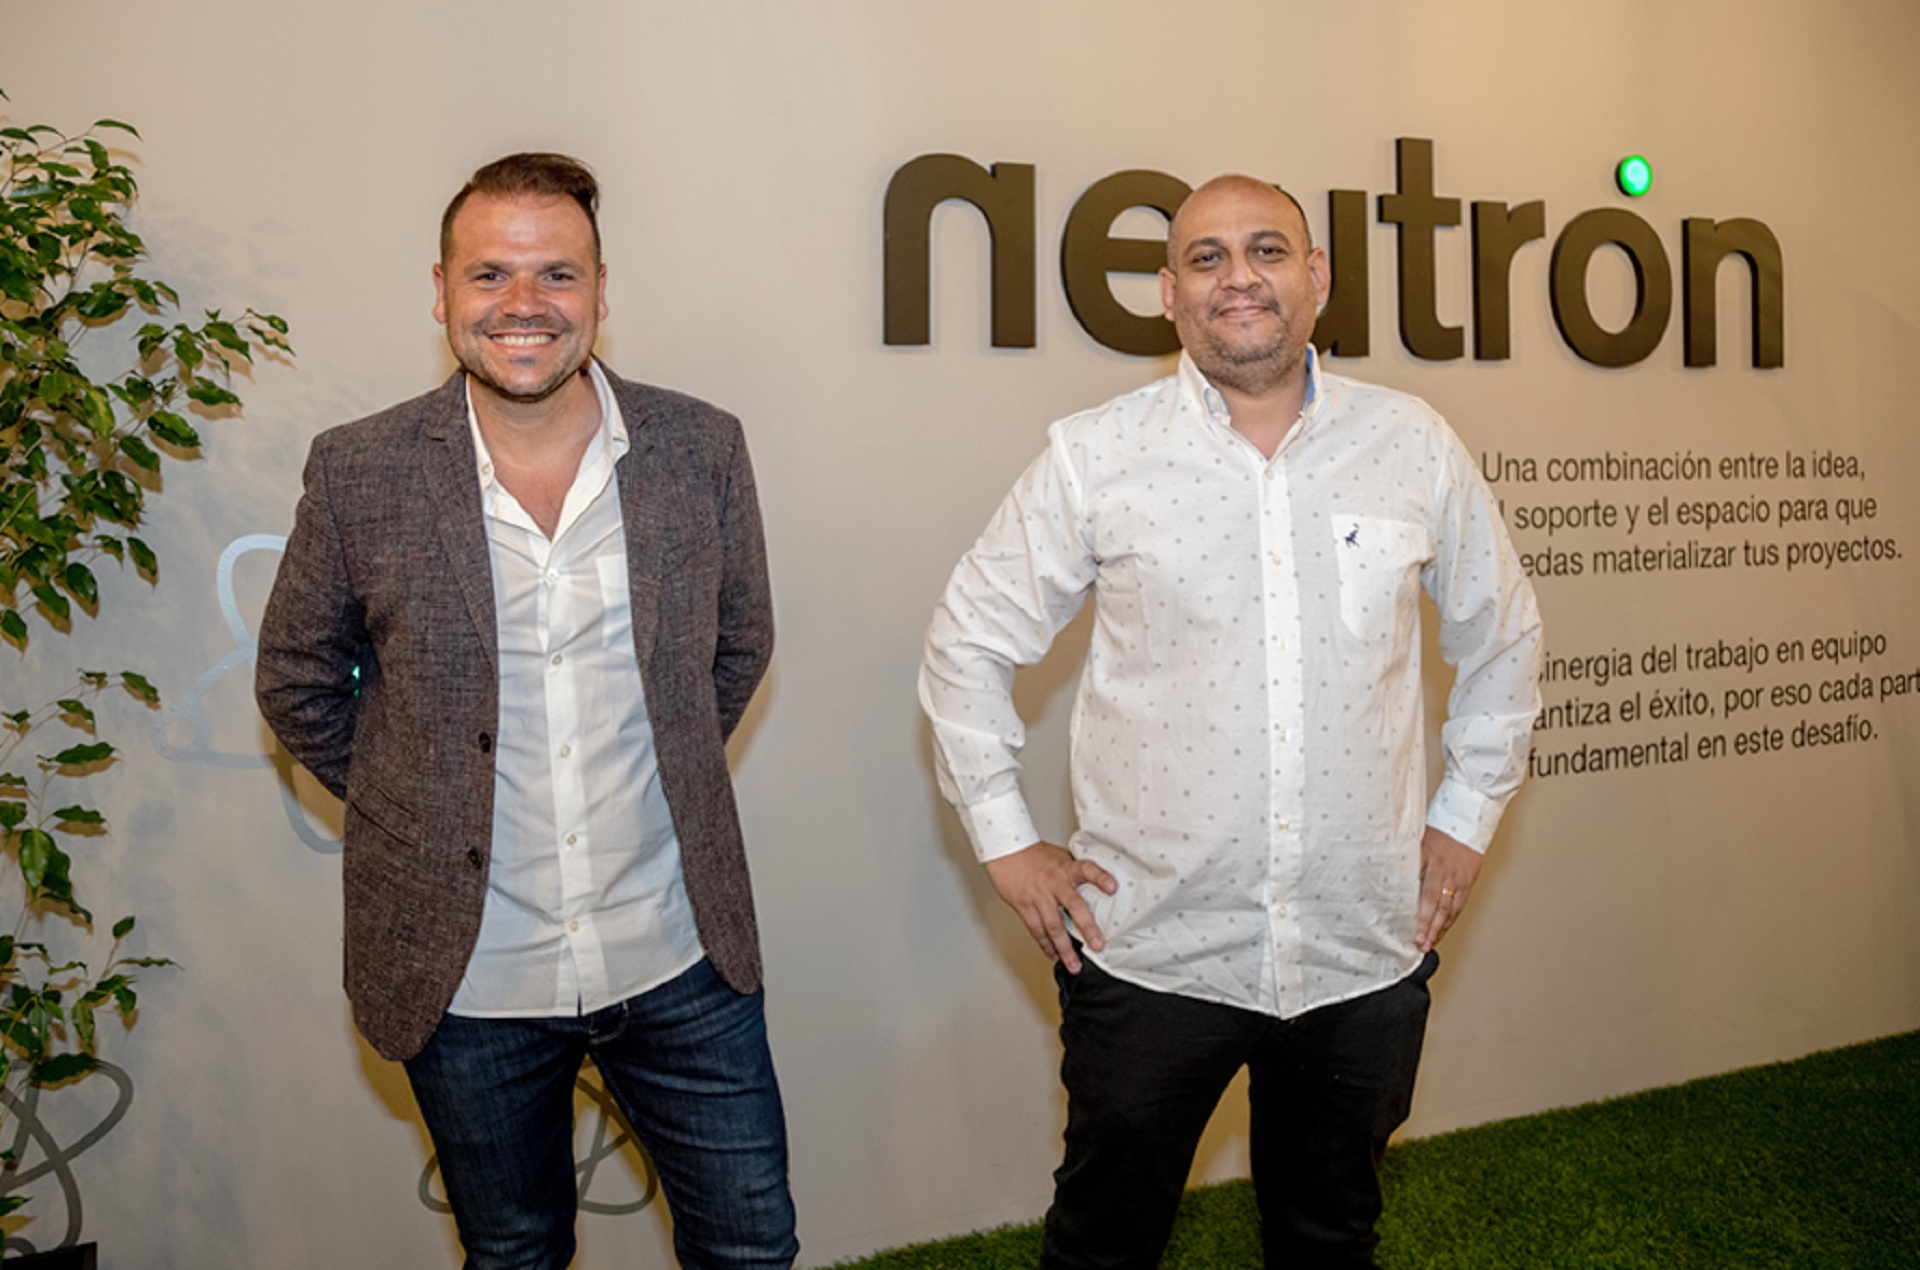 Maximiliano González Kunz, CEO de Neutrón, y Alejandro Cordero, profesor y CEO Innova Space